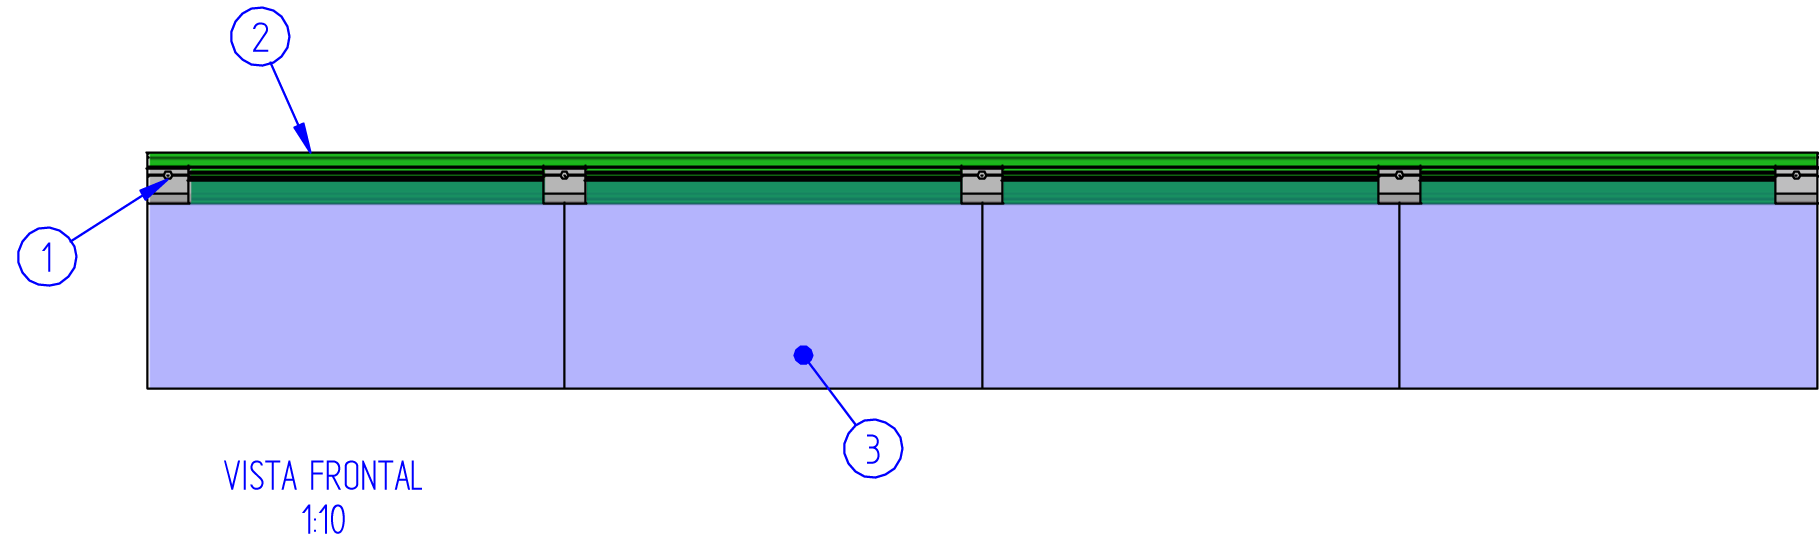 Fig. 1: Composición con diferentes medidas de vidrio Gracias al diseño de los perfiles, podemos usar diferentes espesores de cristales (de 6 a 12 mm), lo que nos proporciona una gran variedad de